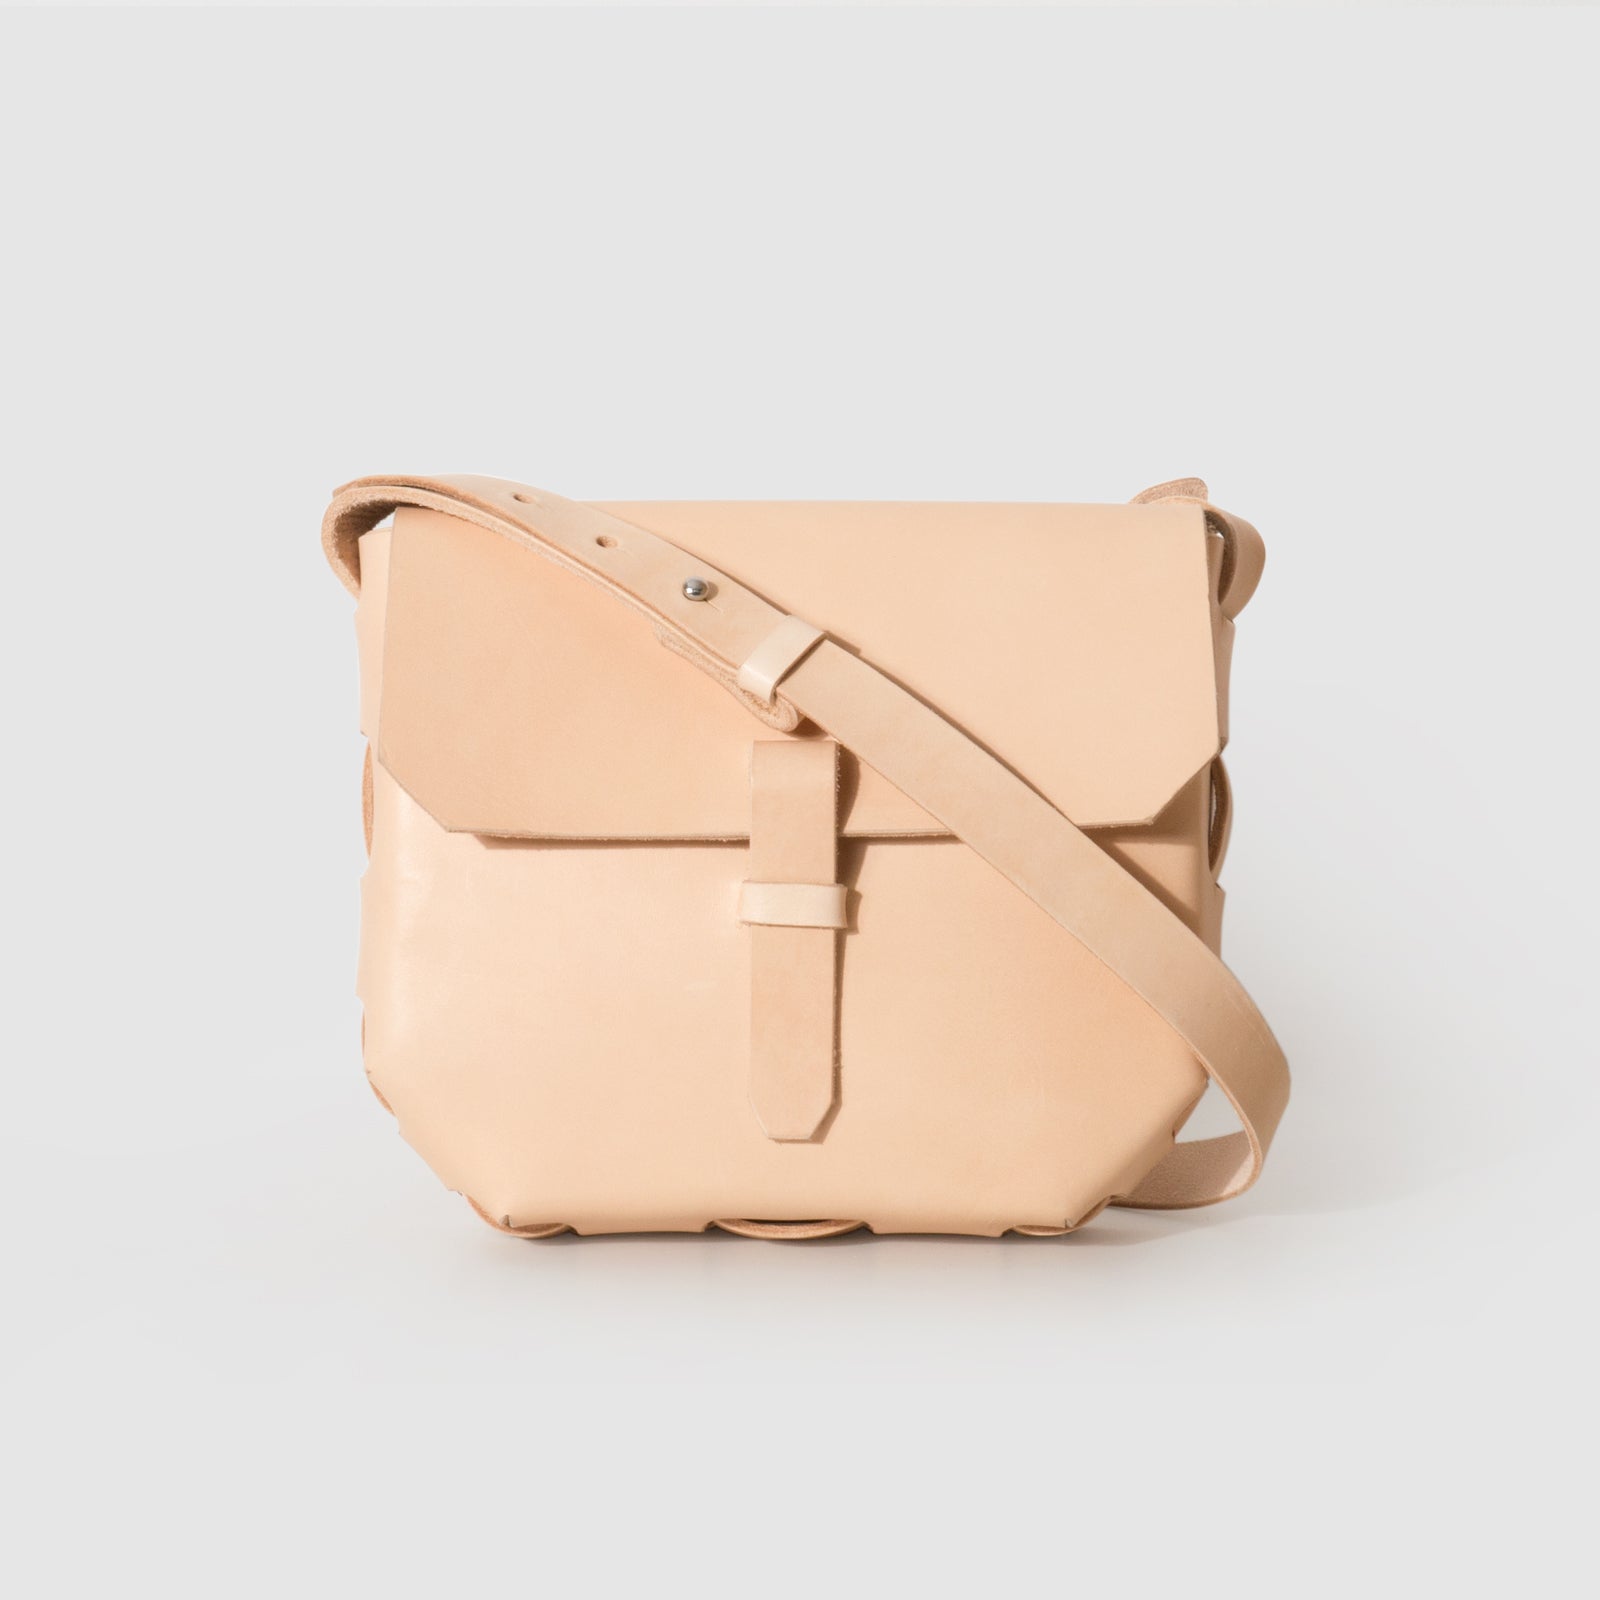 Baggit Women's Satchel Handbag - Medium (Beige) : Amazon.in: Beauty